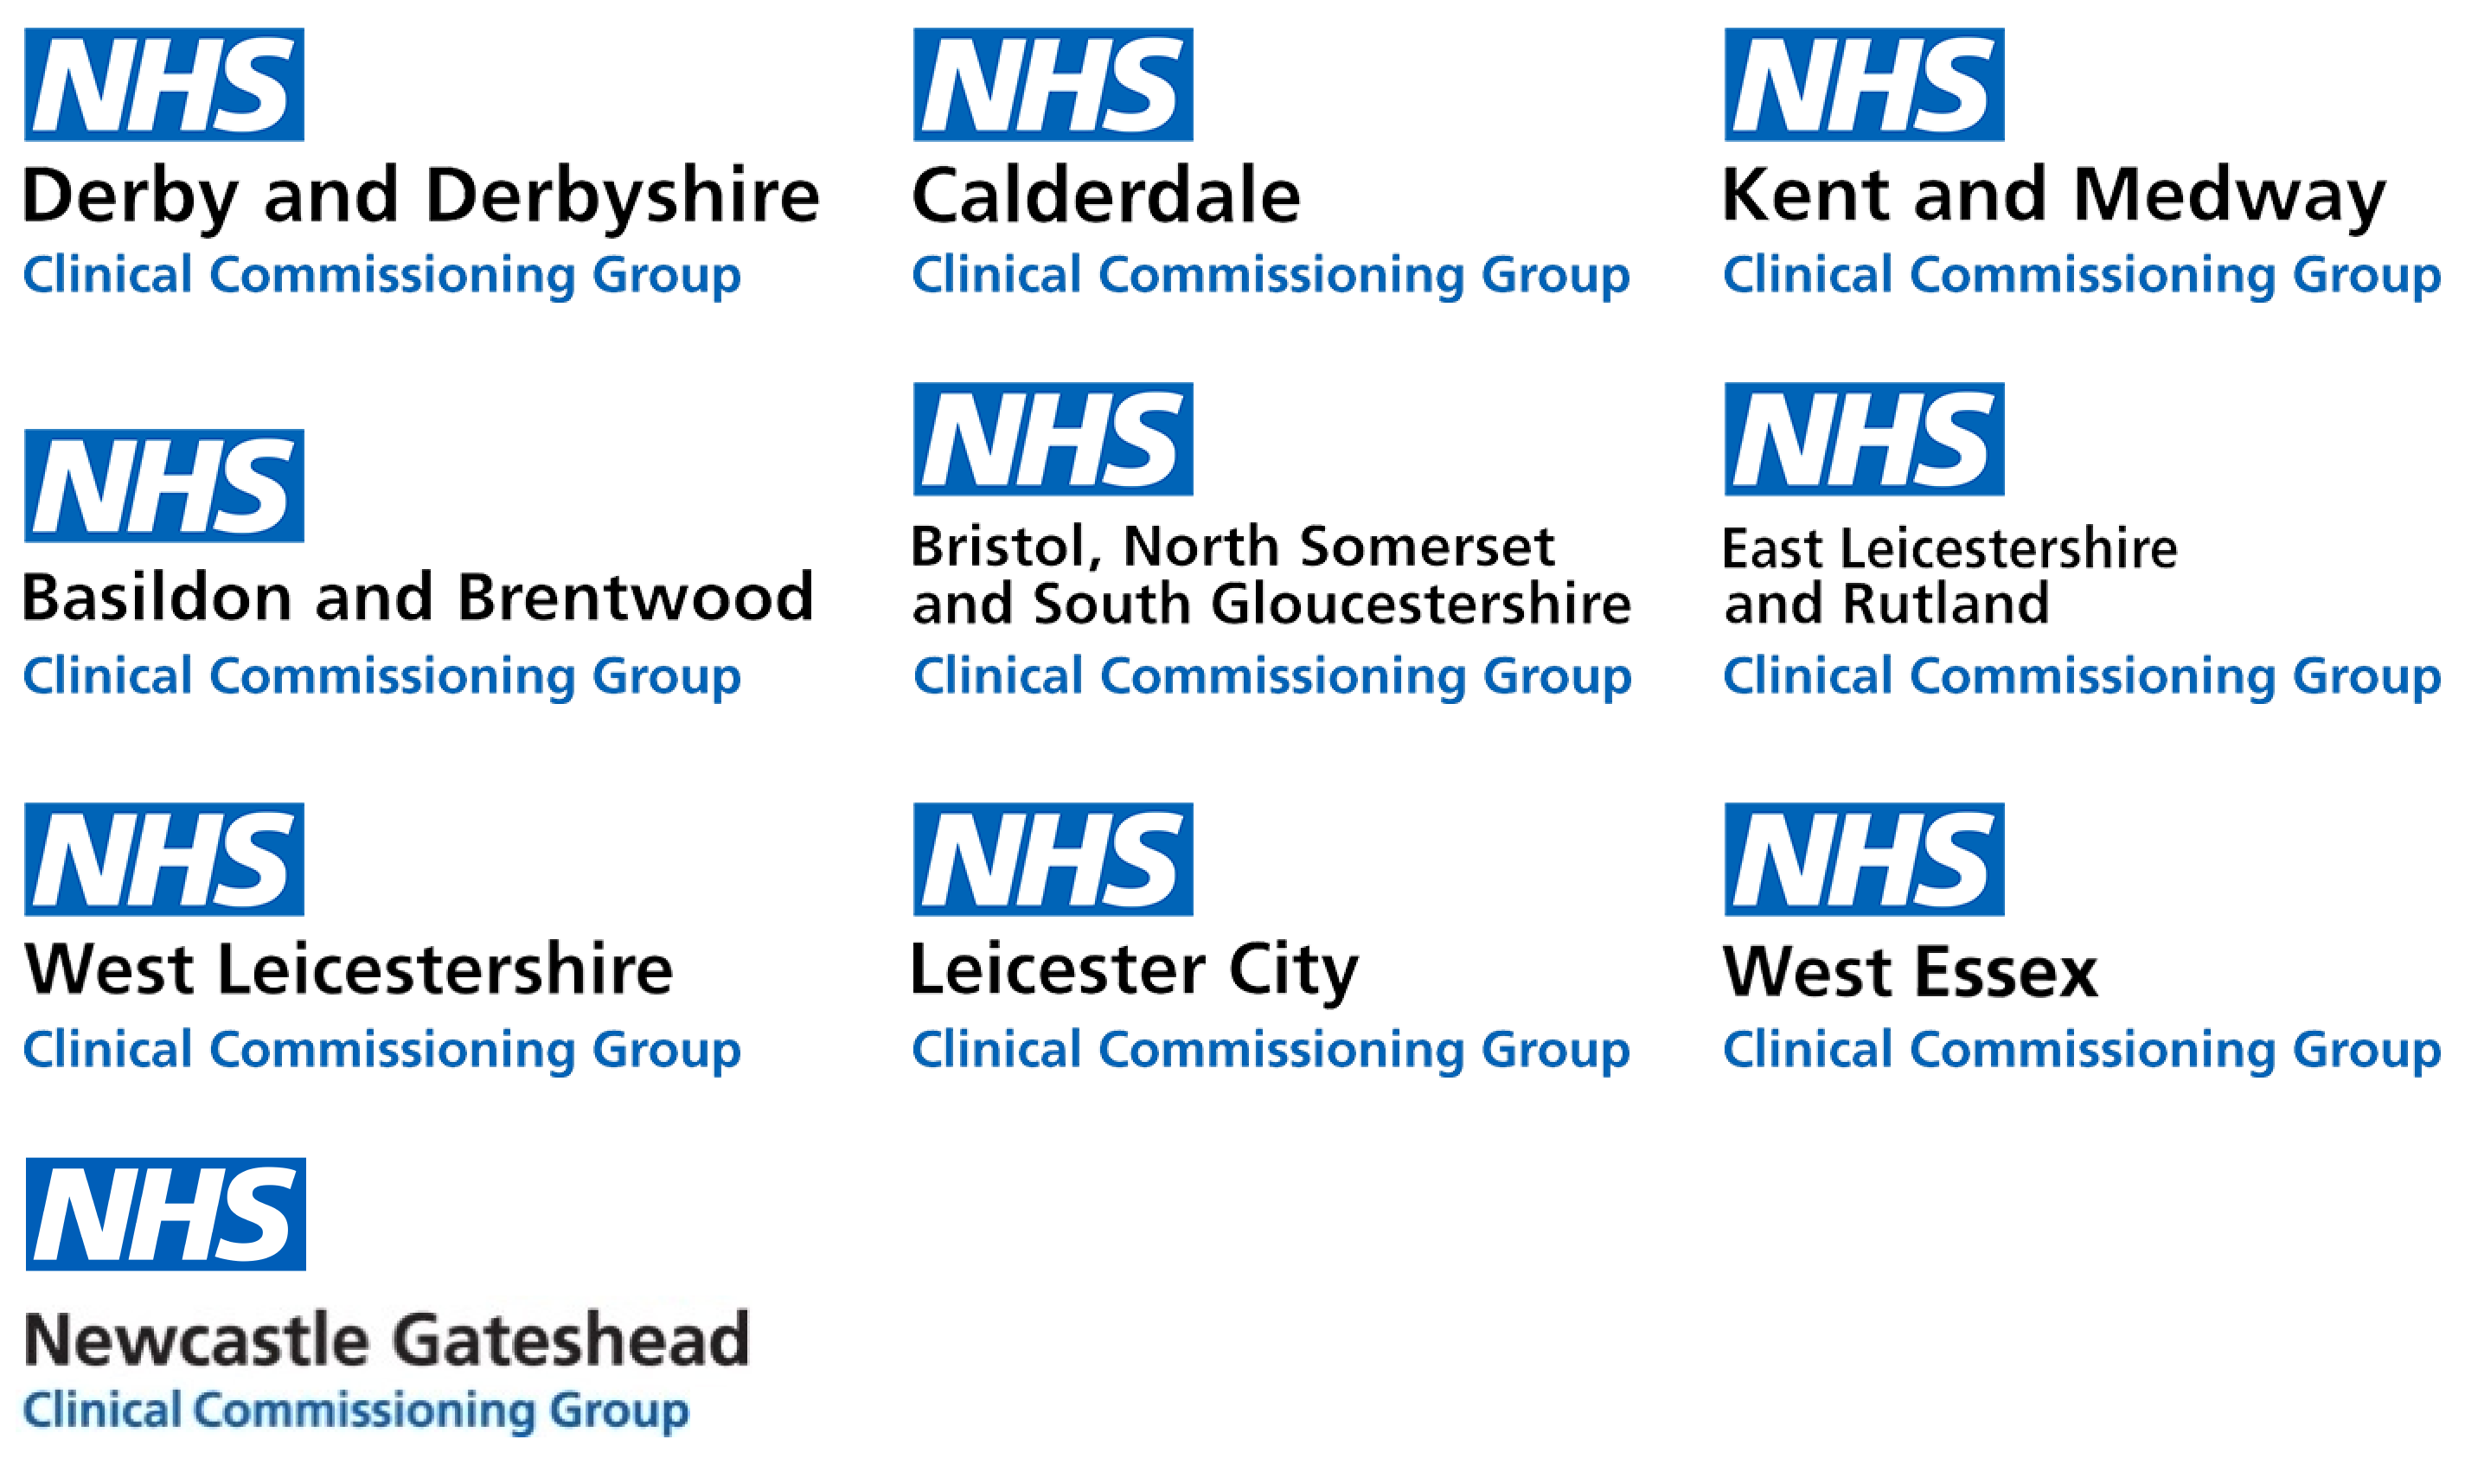 NHS Logos